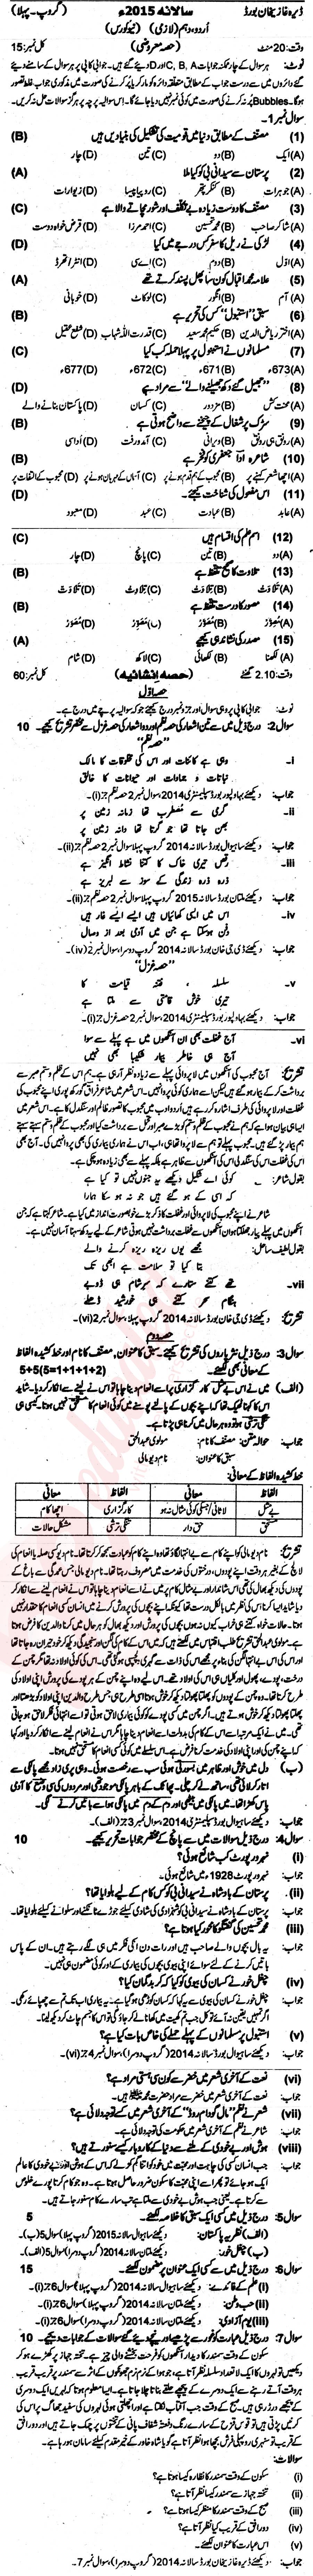 Urdu 10th Urdu Medium Past Paper Group 1 BISE DG Khan 2015